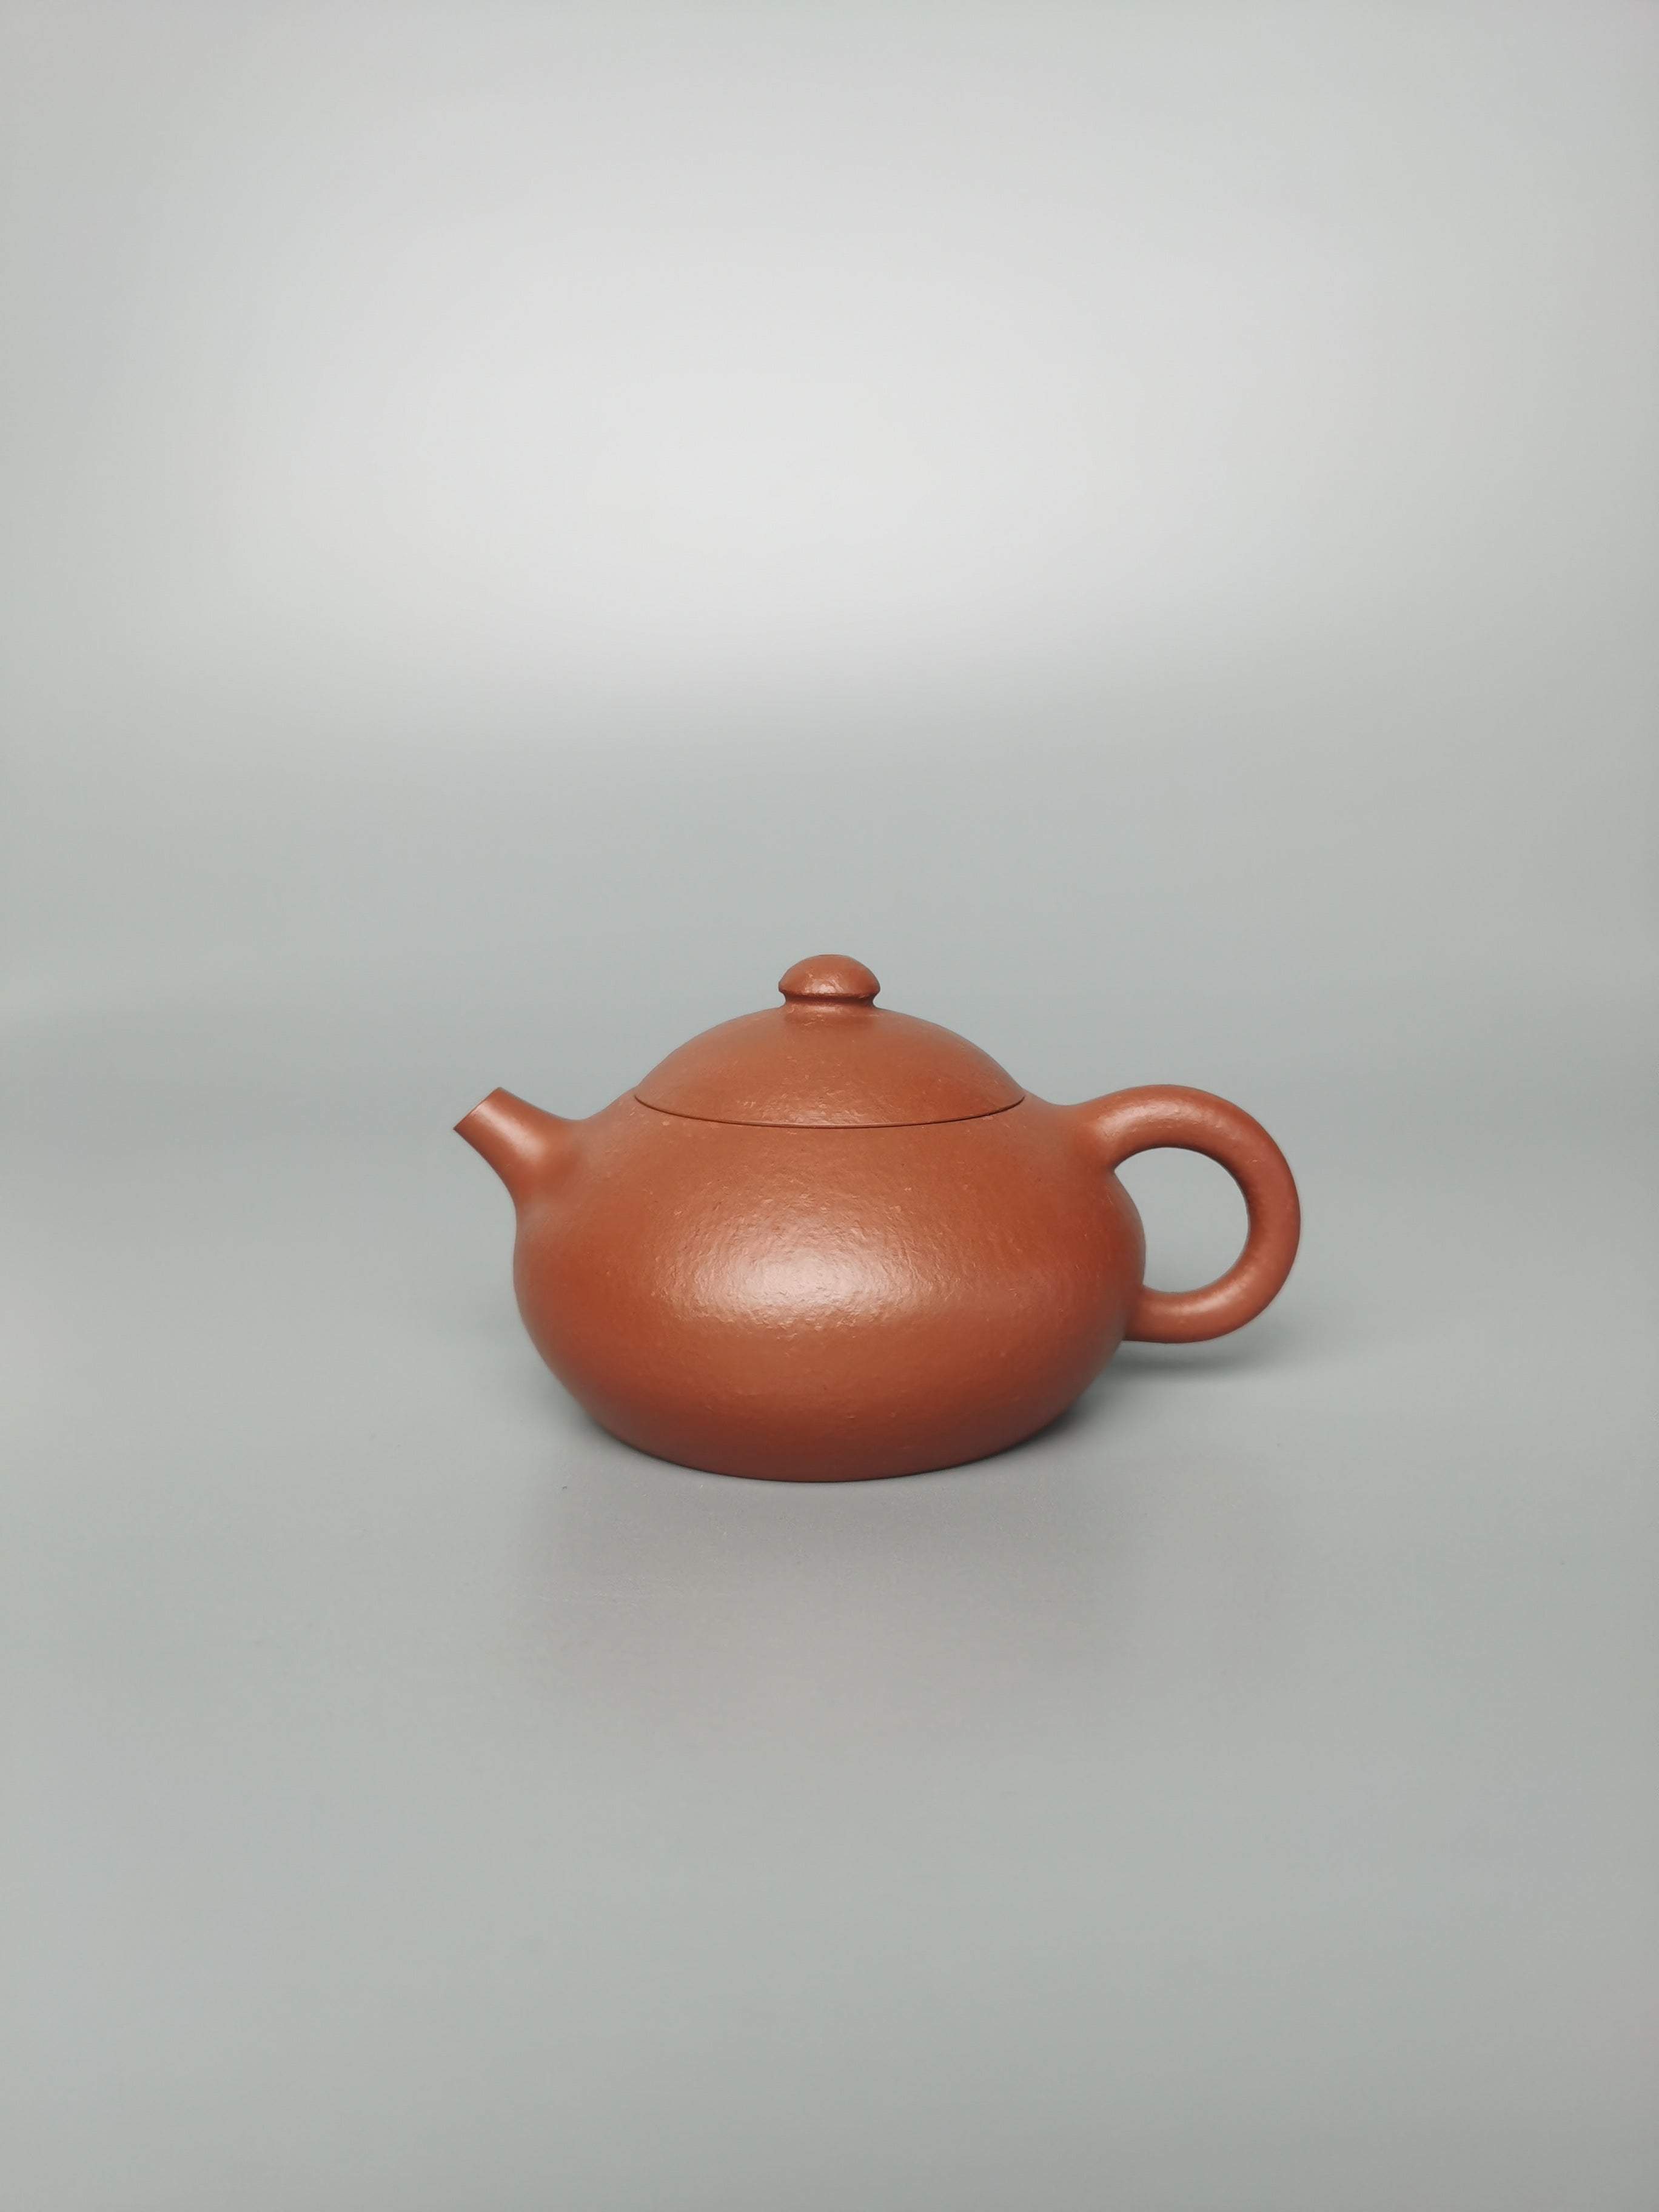 Siyutao teapot the wen dan full handcraft by artist jia hui shi 140ml